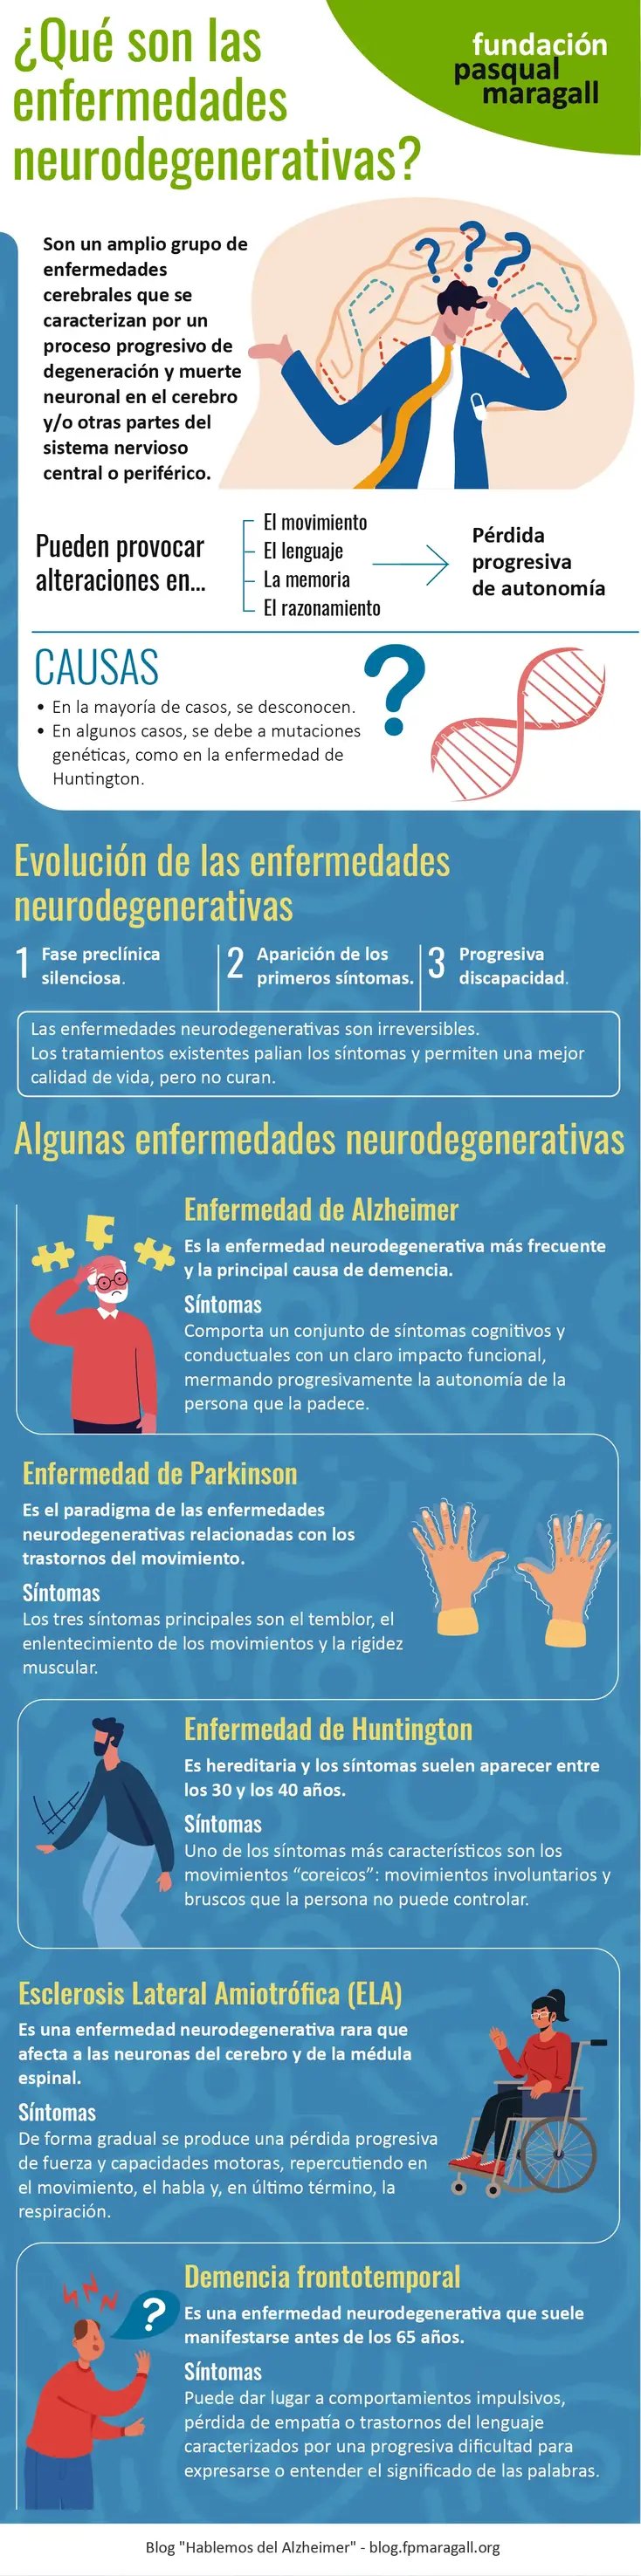 ¿Qué son las enfermedades neurodegenerativas?